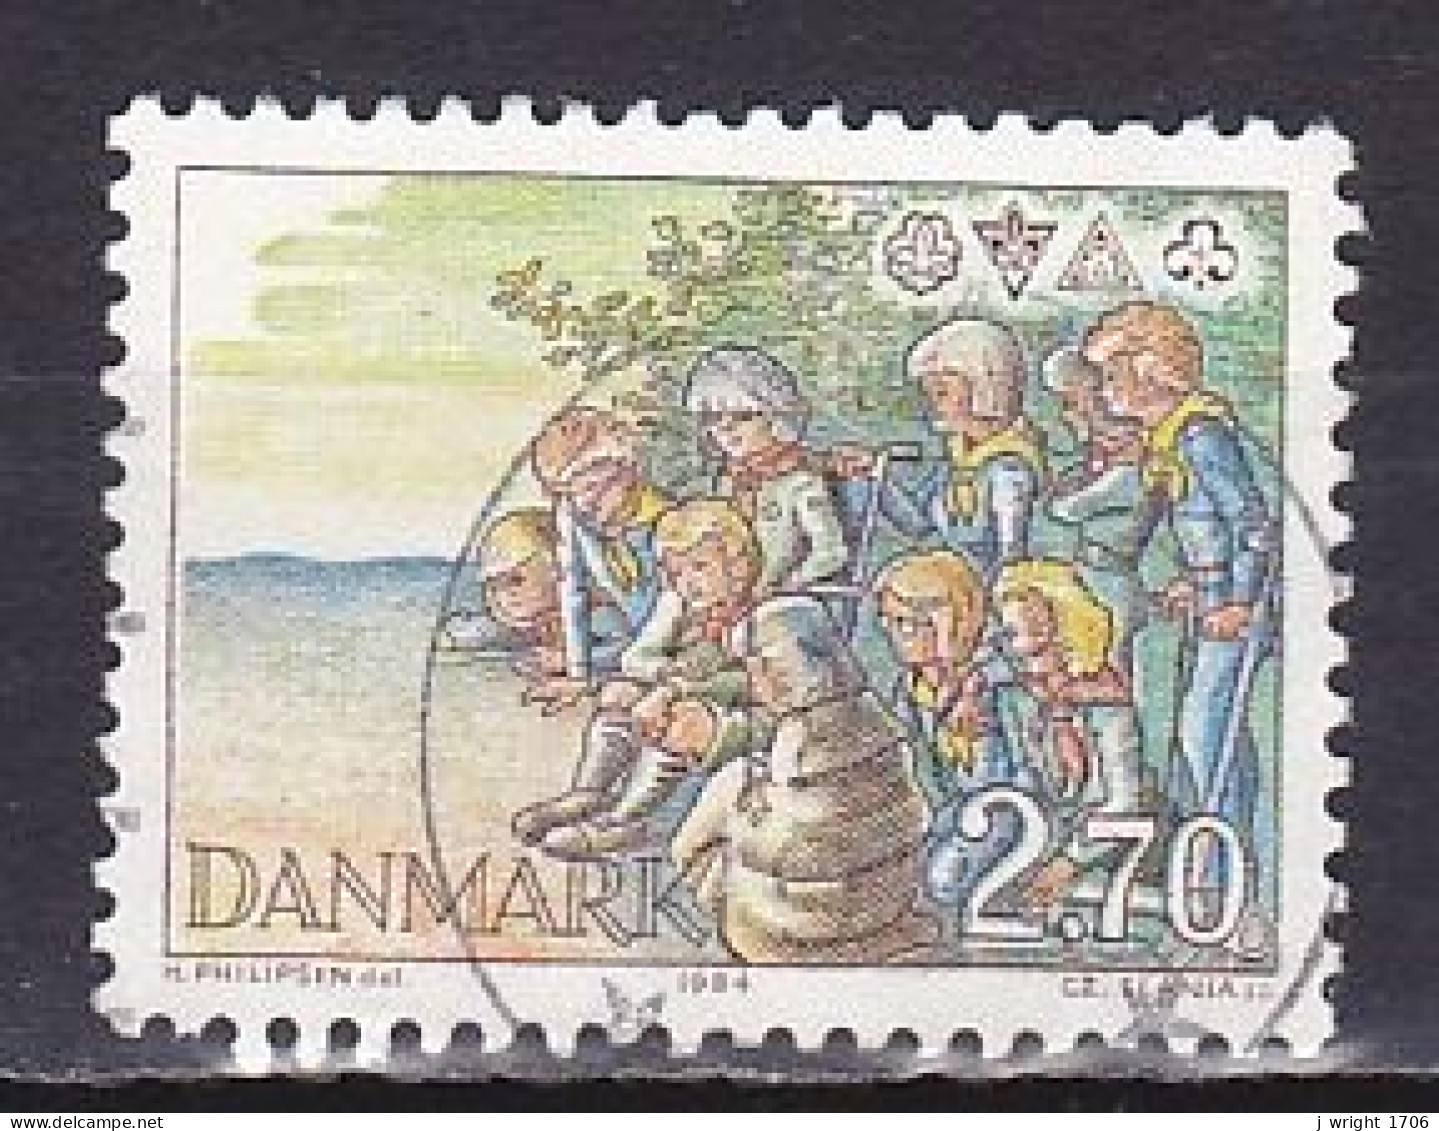 Denmark, 1984, Scout Movement, 2.70kr, USED - Oblitérés